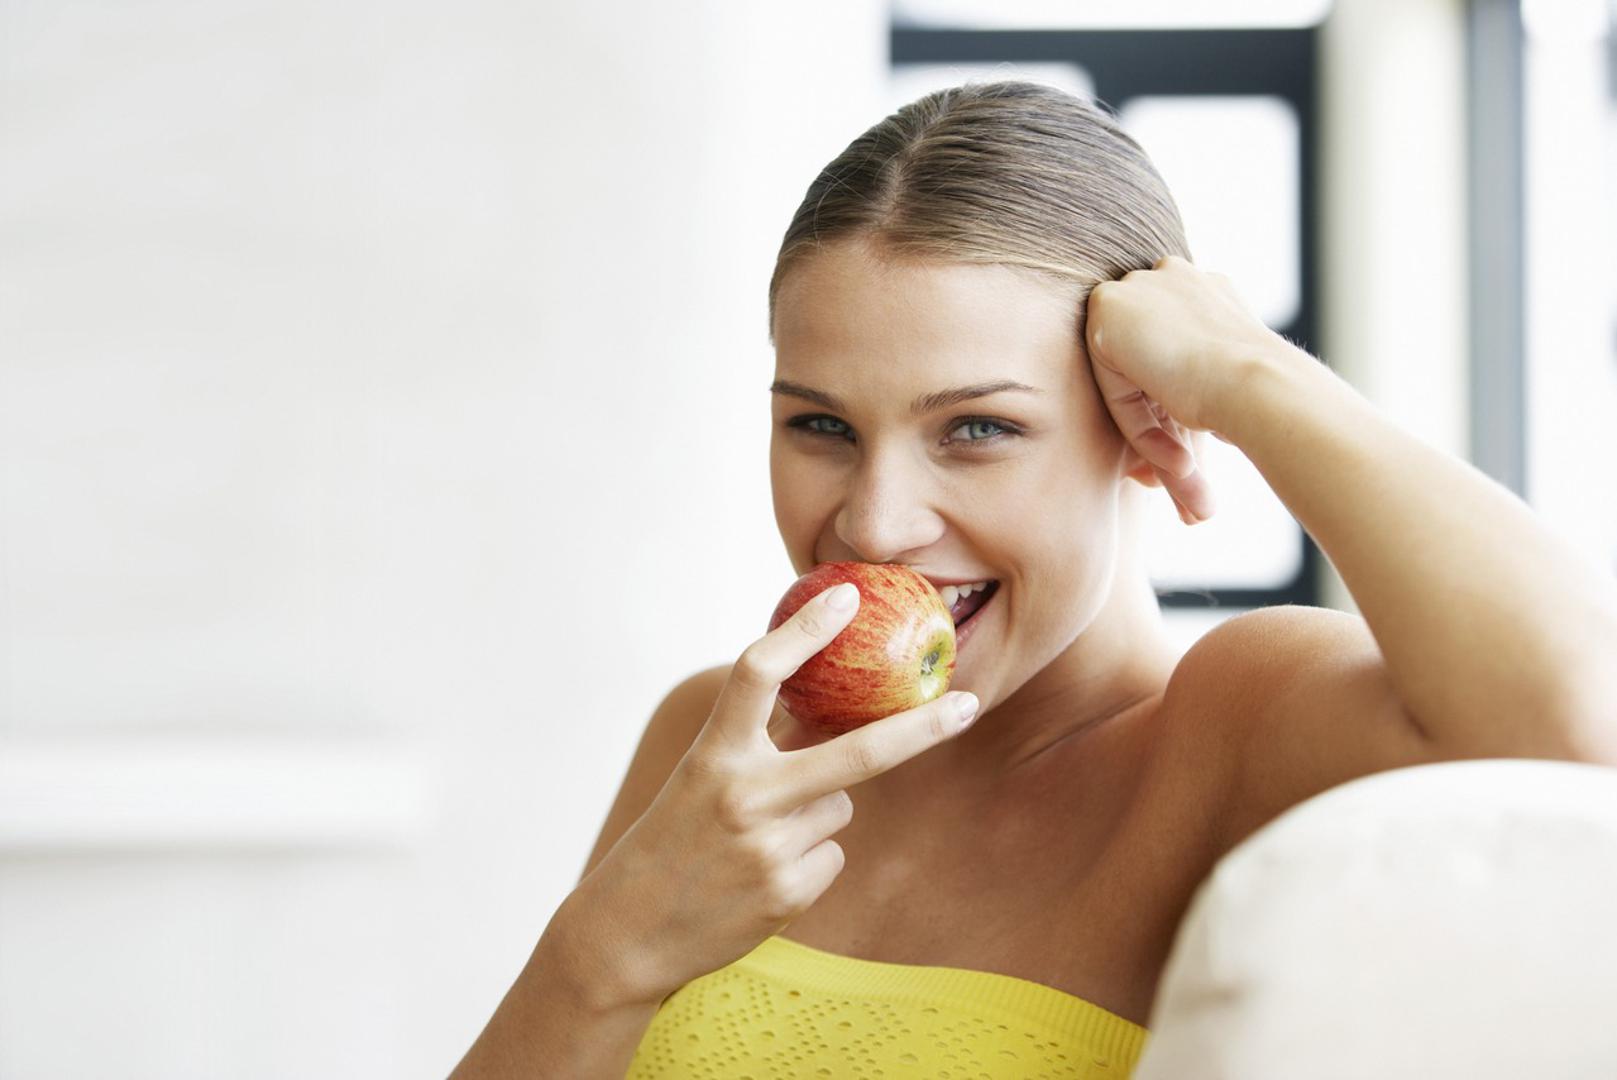 Jabuke su odličan izbor voća kada nemate kod sebe četkicu za zube. Osim što će "očistiti" površinu zuba, uklonit će i ostatke hrane među zubima i pomoći očuvanju zdravlja desni. 